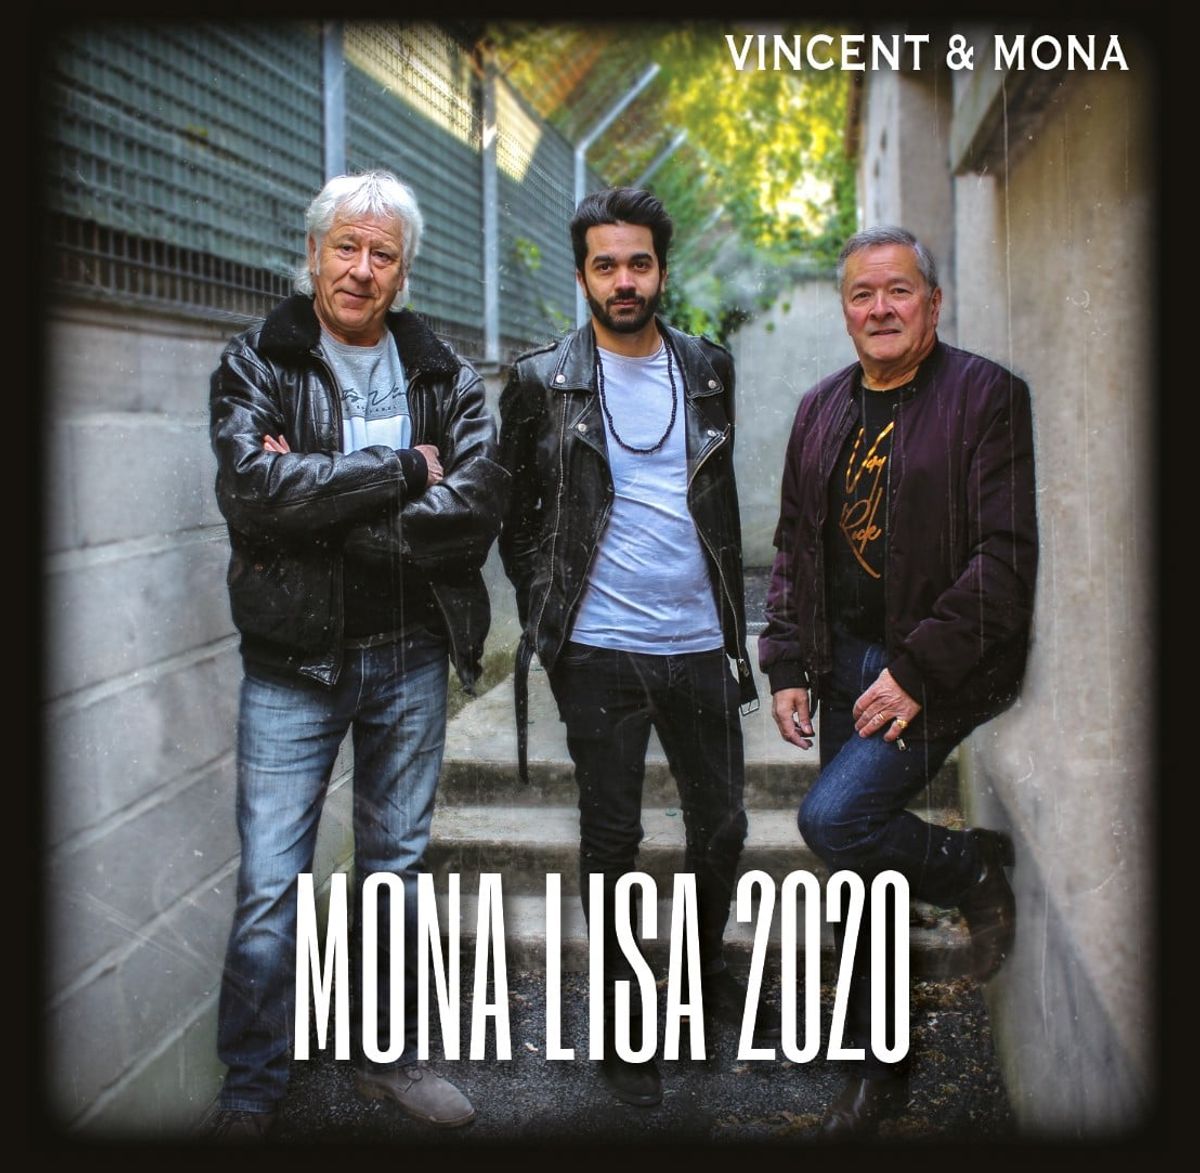 Vincent & Mona